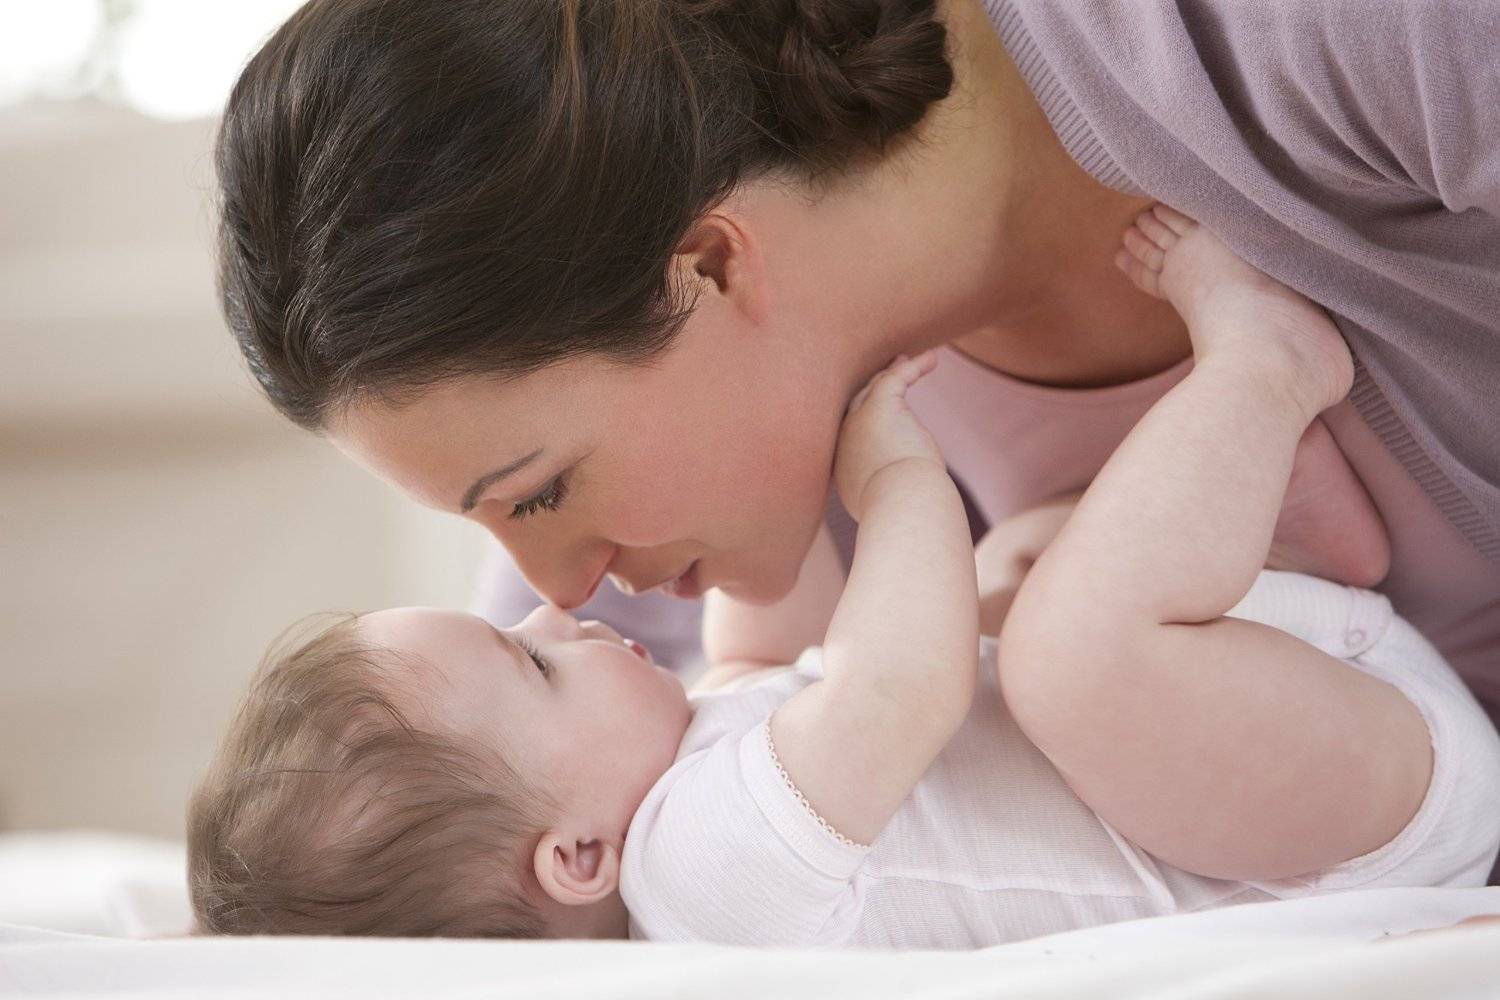 Грудное вскармливание новорожденных: советы (часть 1)